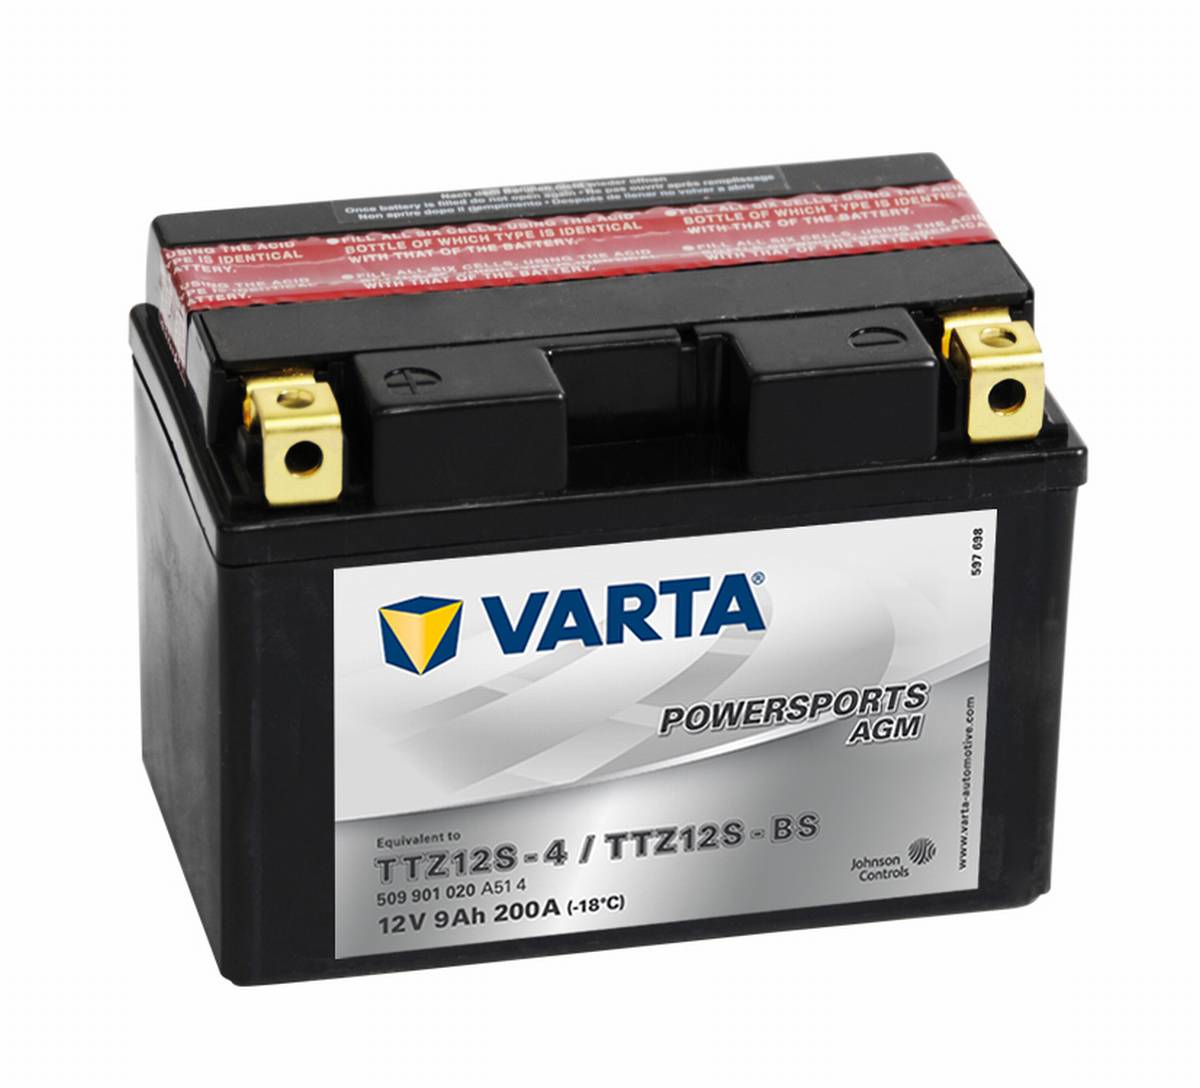 Varta Powersports AGM Moto Batteria TTZ12S YTZ12S-BS 509901020 12V 9Ah 200A